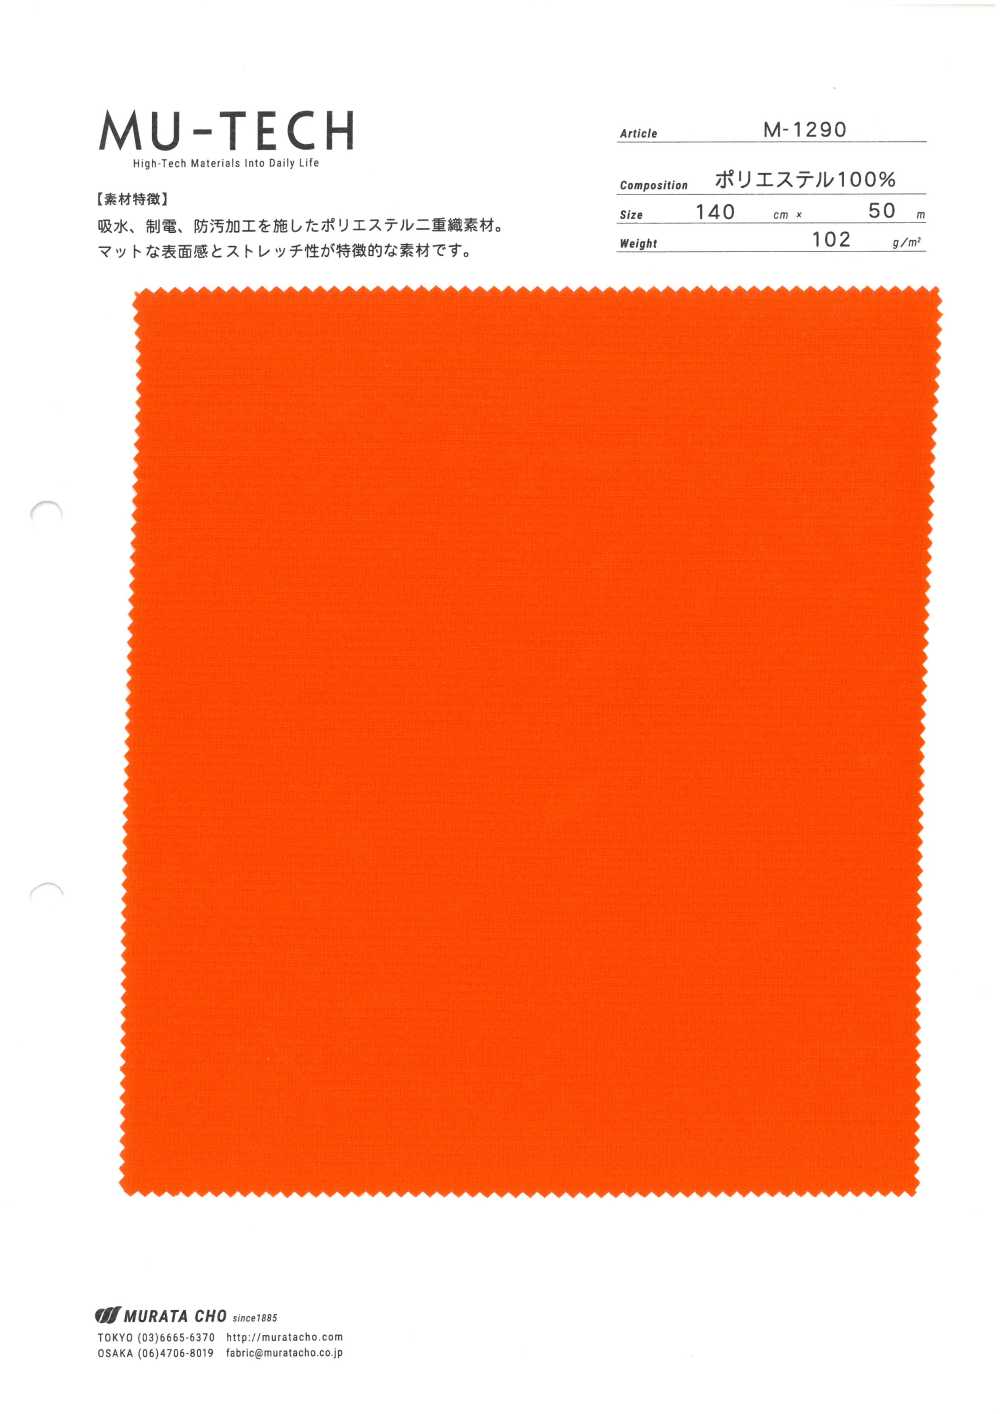 M-1290 MU-TECH Polyester Dệt đôi[Vải] Trưởng Murata